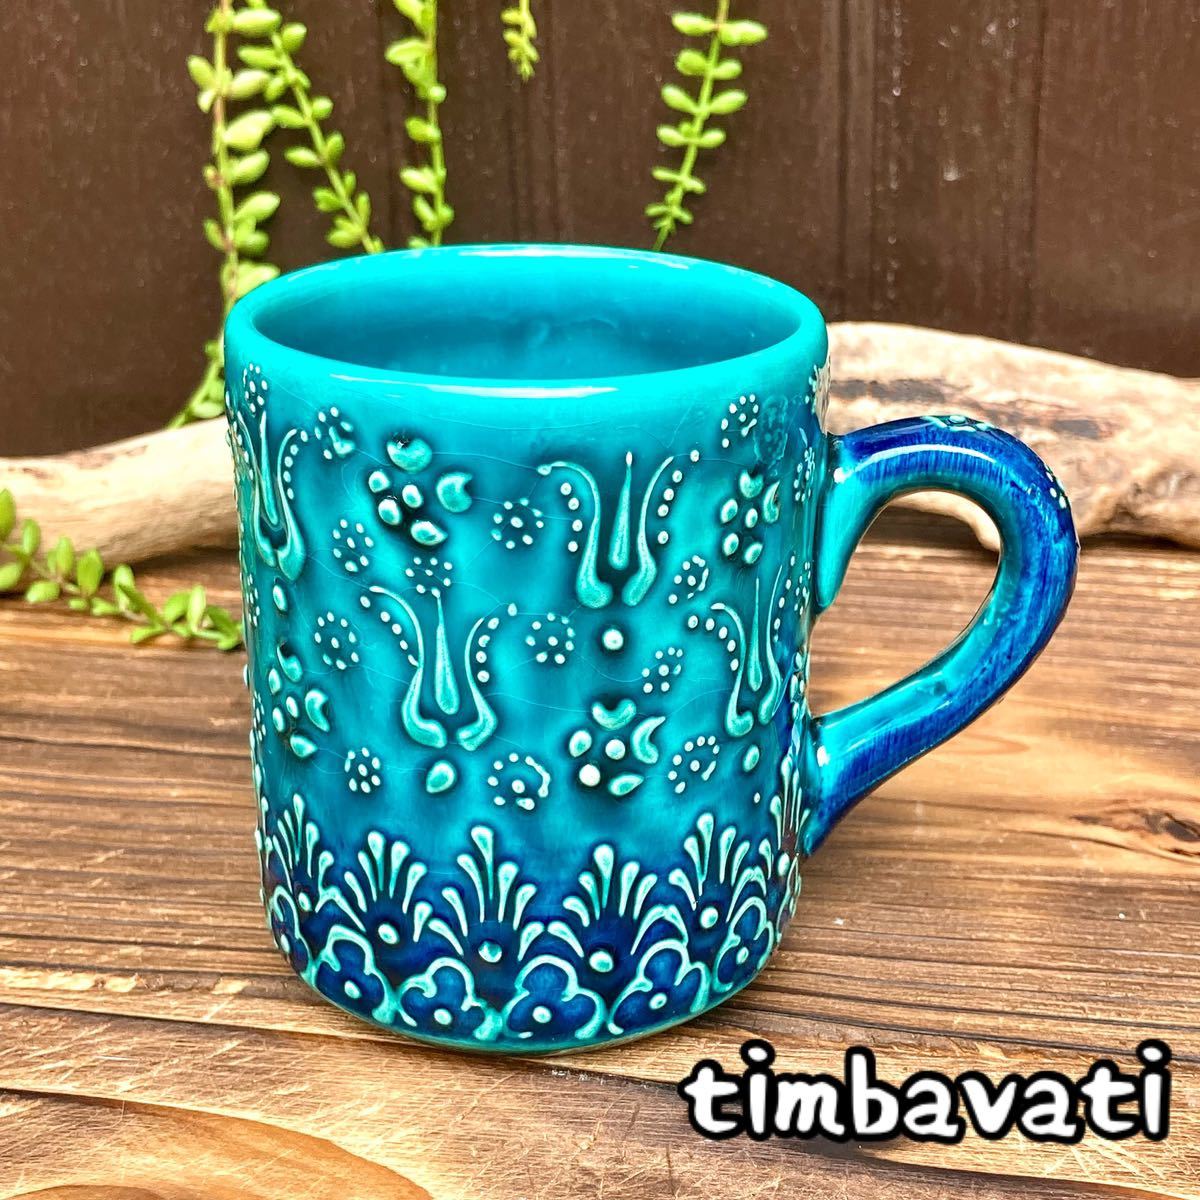 ☆Nouveau☆Tasse de poterie turque *Turquoise* Poterie Kyutahya faite à la main [Livraison gratuite avec conditions] 150, ustensiles à thé, Tasse, Fabriqué en céramique